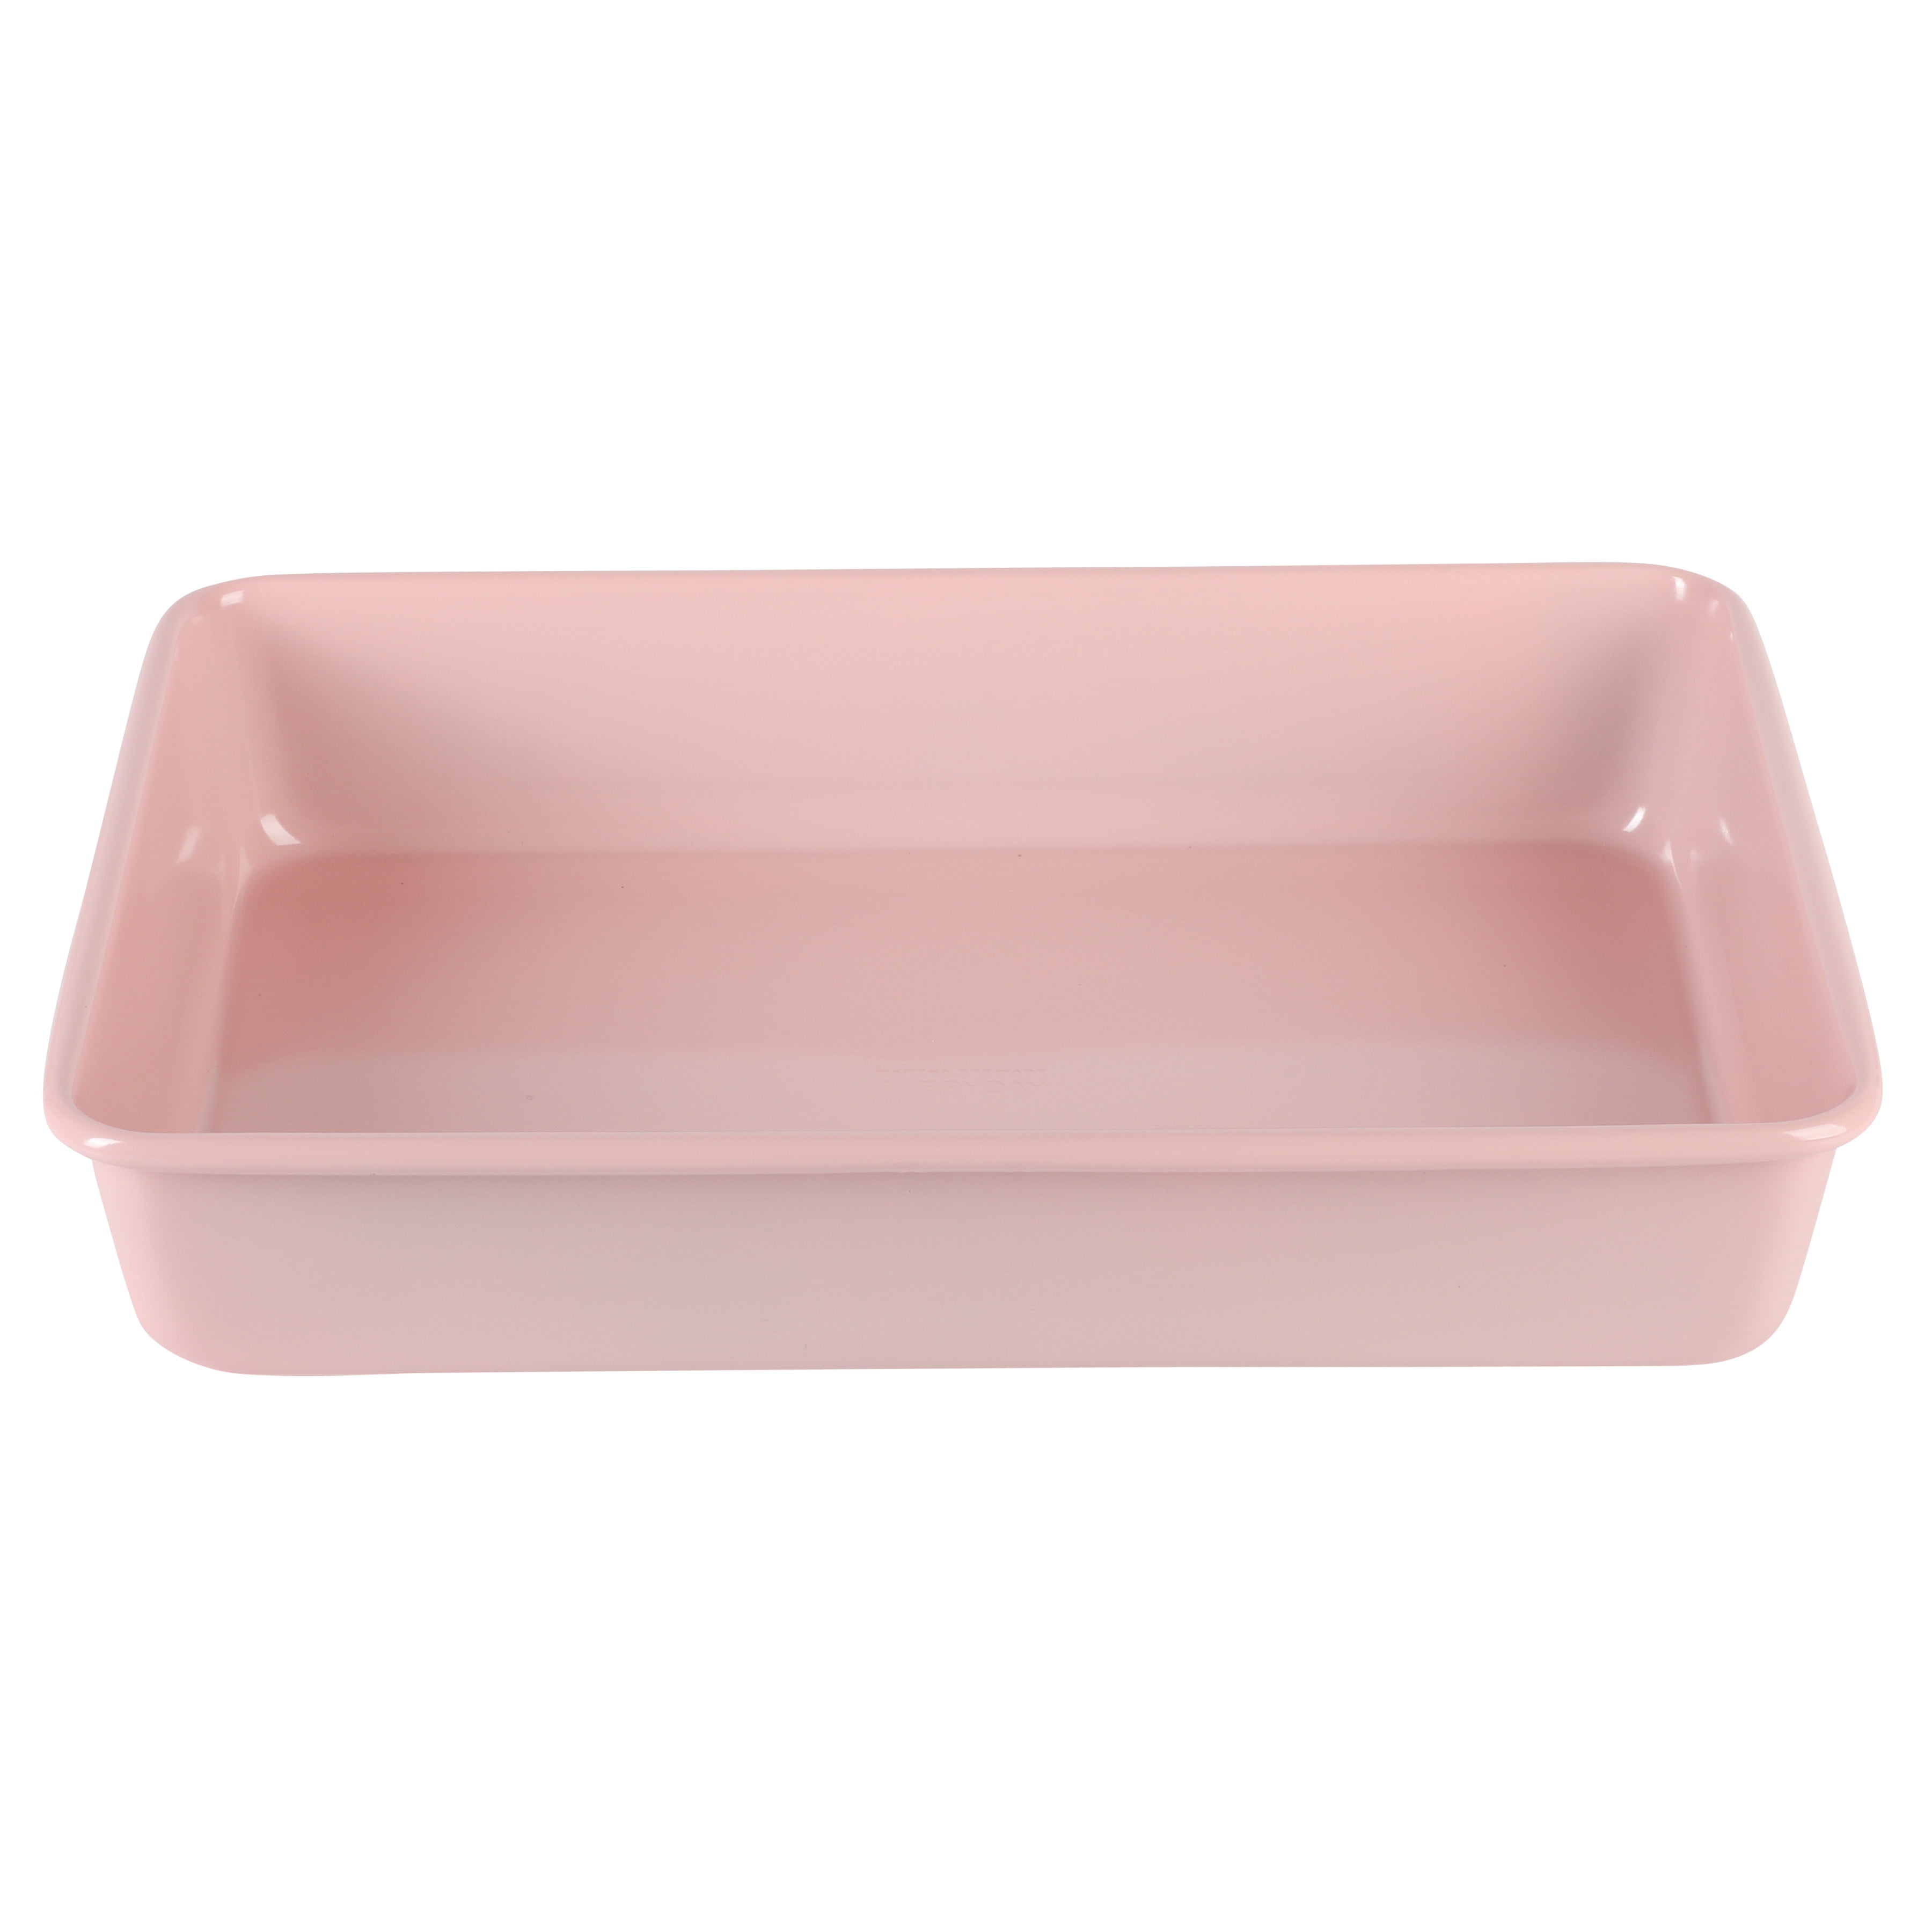 Martha Stewart 4-Piece Non-Stick Aluminum Bakeware Baking Set - Dishwasher Safe